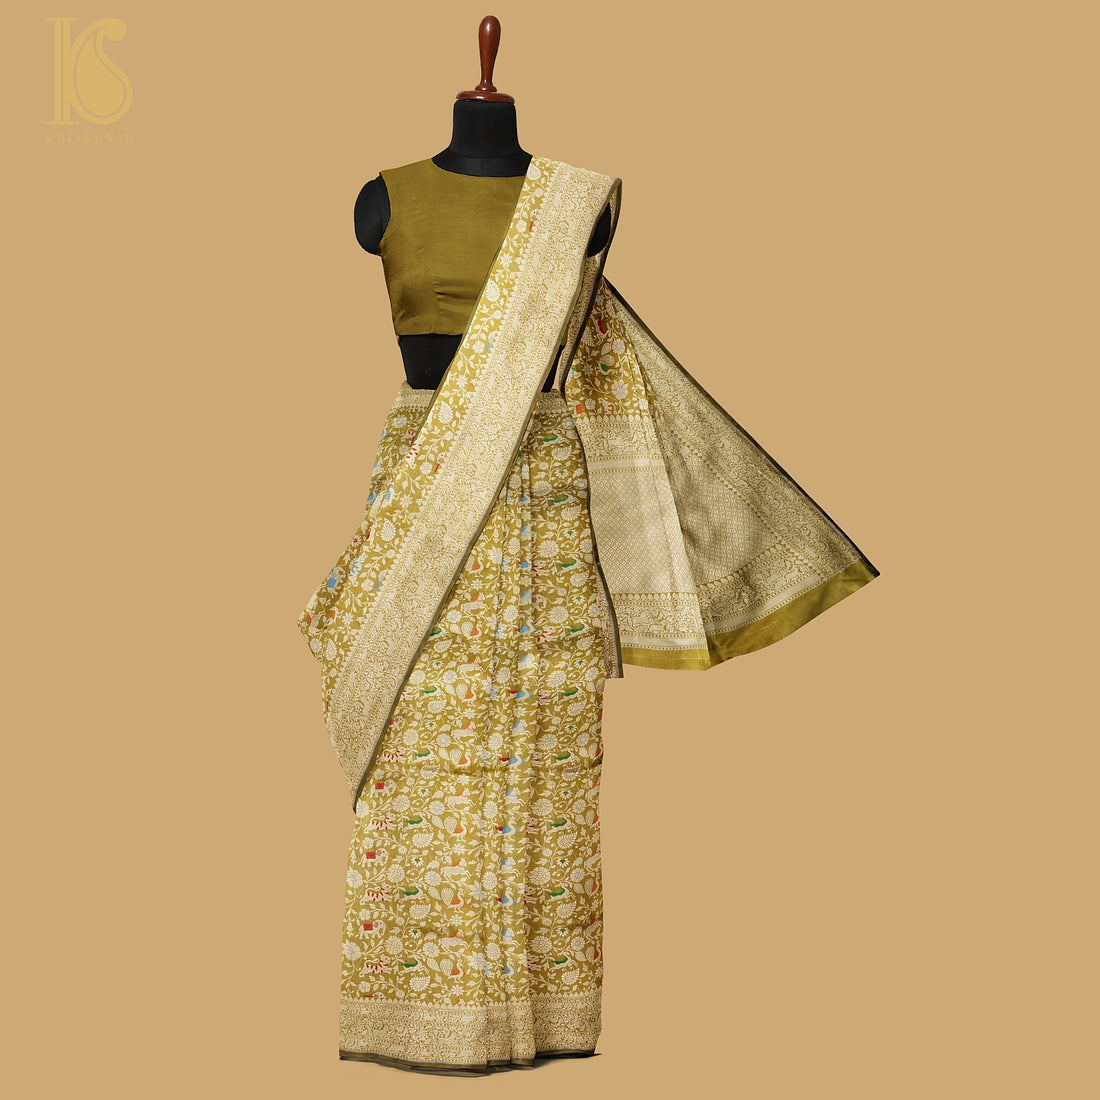 Reef Gold Pure Katan Silk Handwoven Banarasi Shikargah Saree - Preorder - Khinkhwab